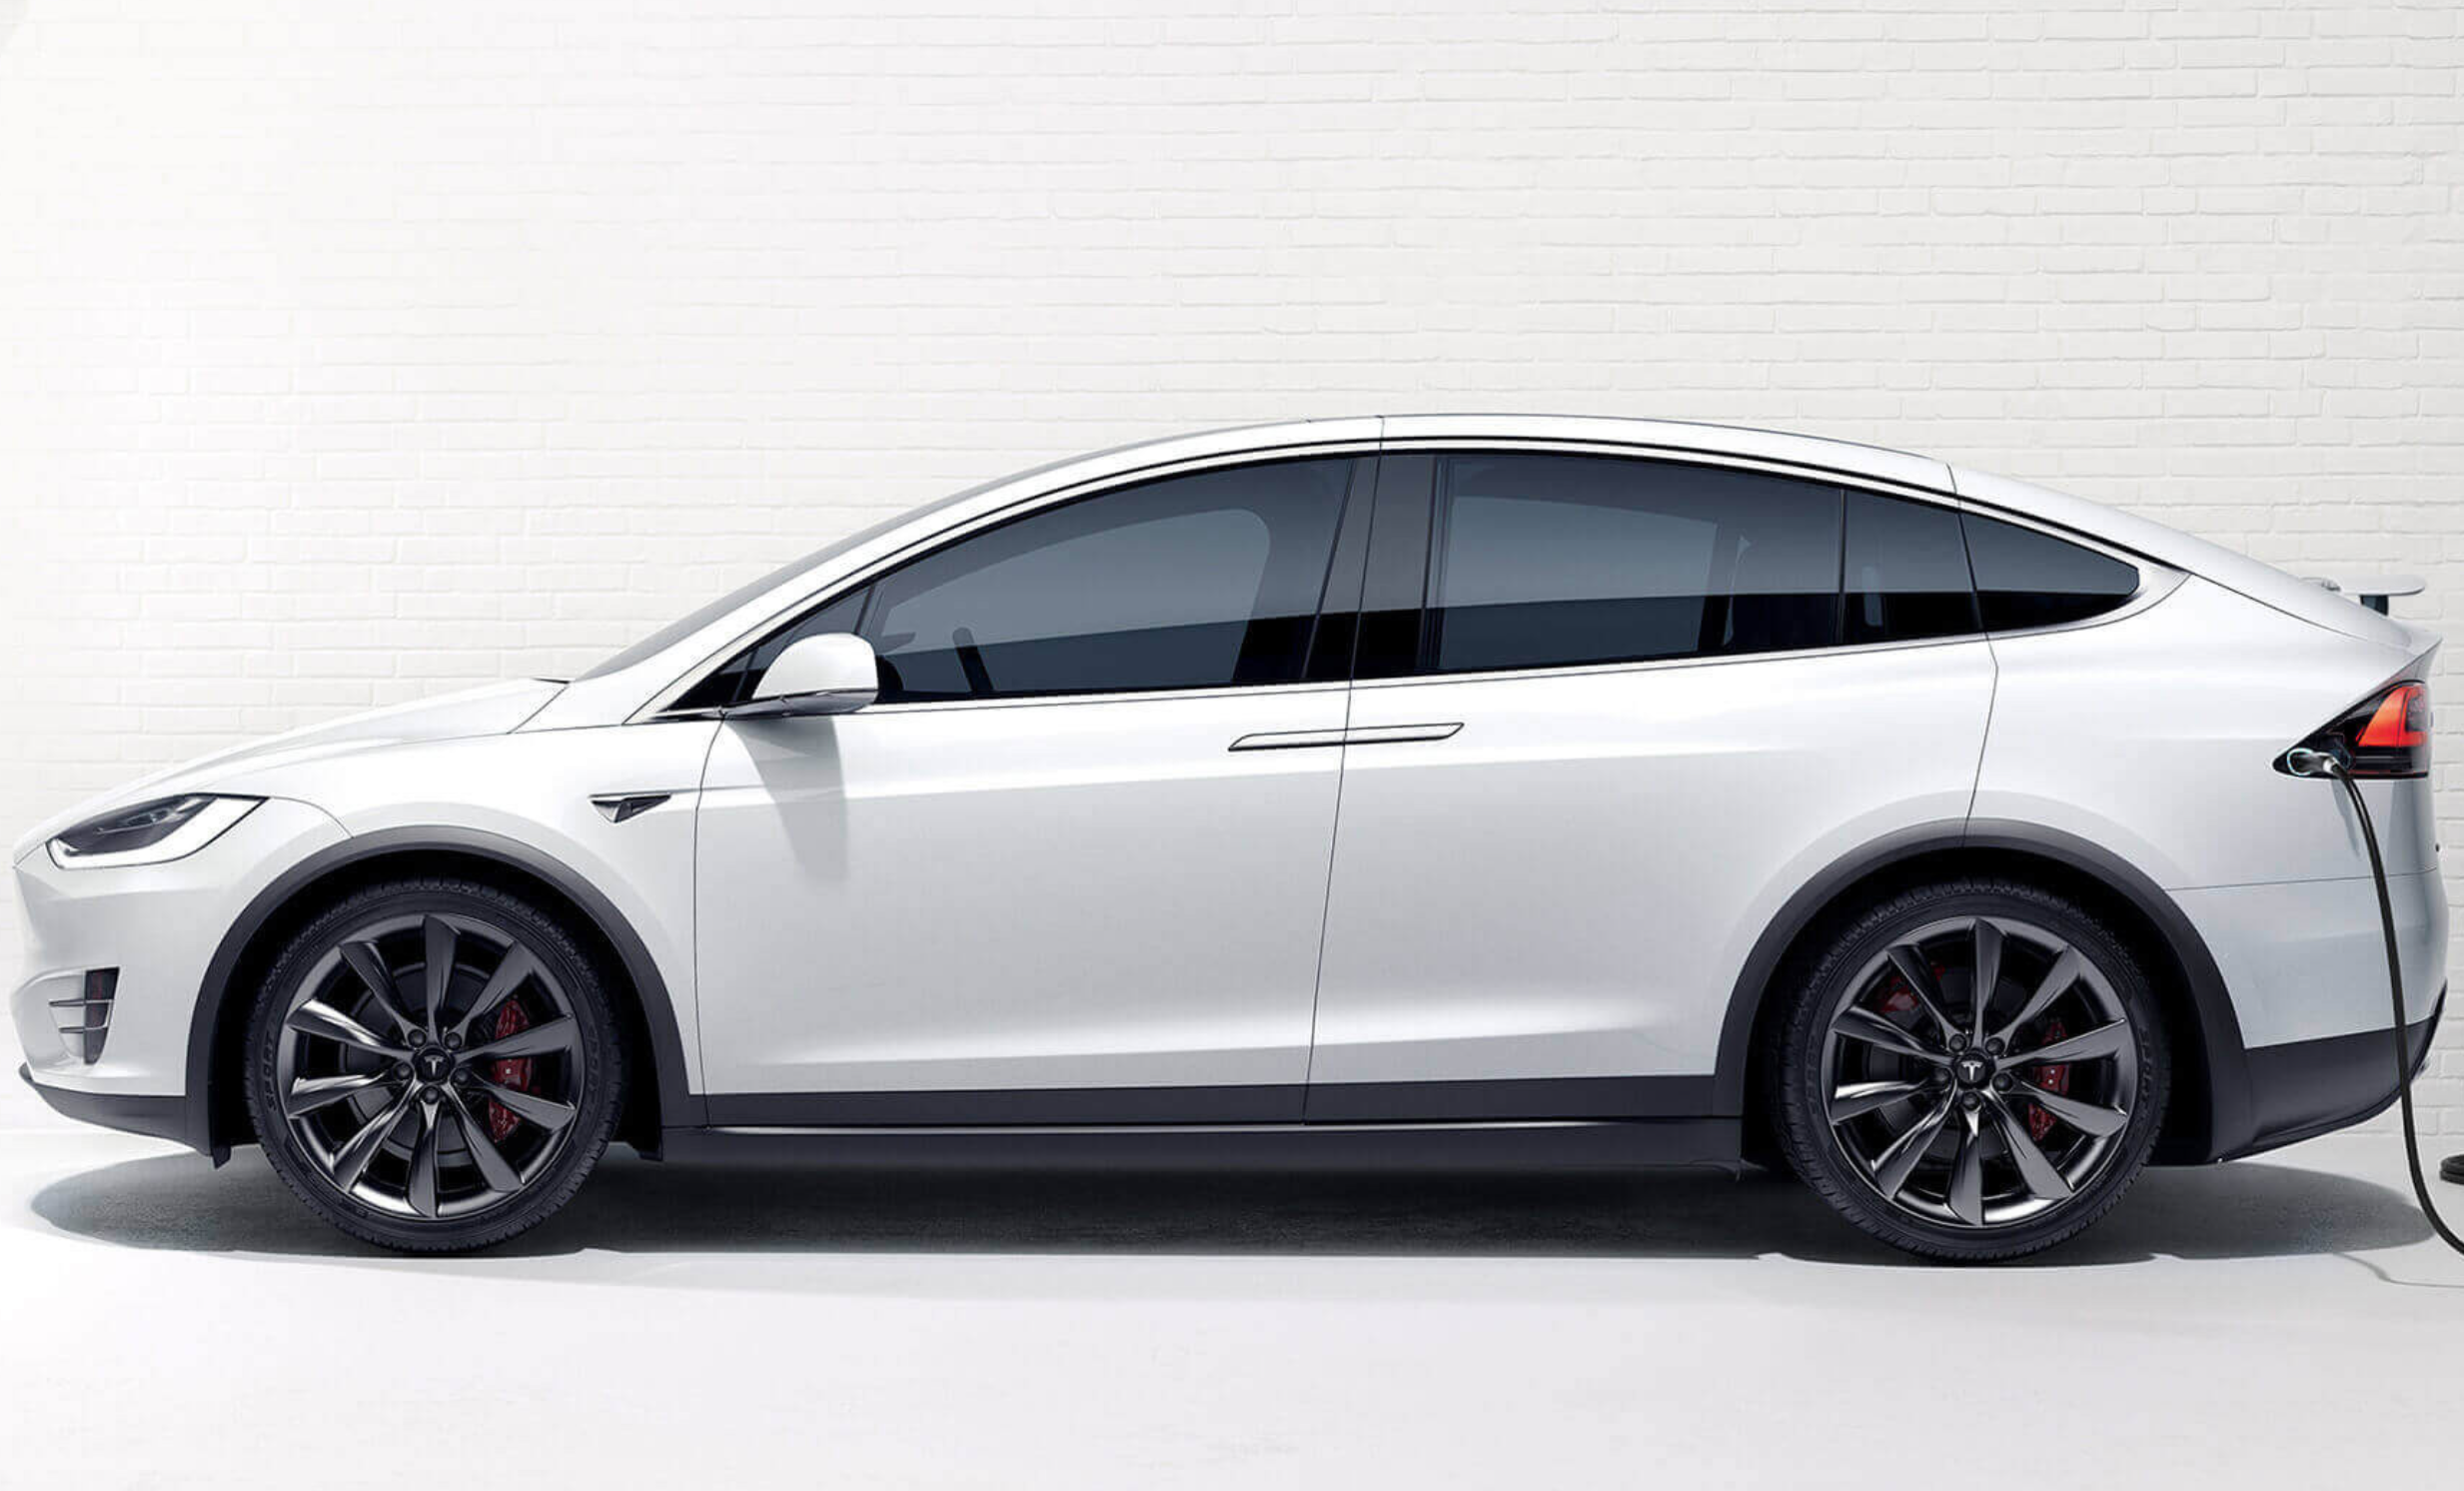 Tesla model x Plaid 2021. Tesla model x Plaid 2022. Tesla model x Plaid. Tesla model x 2017. Model x plaid